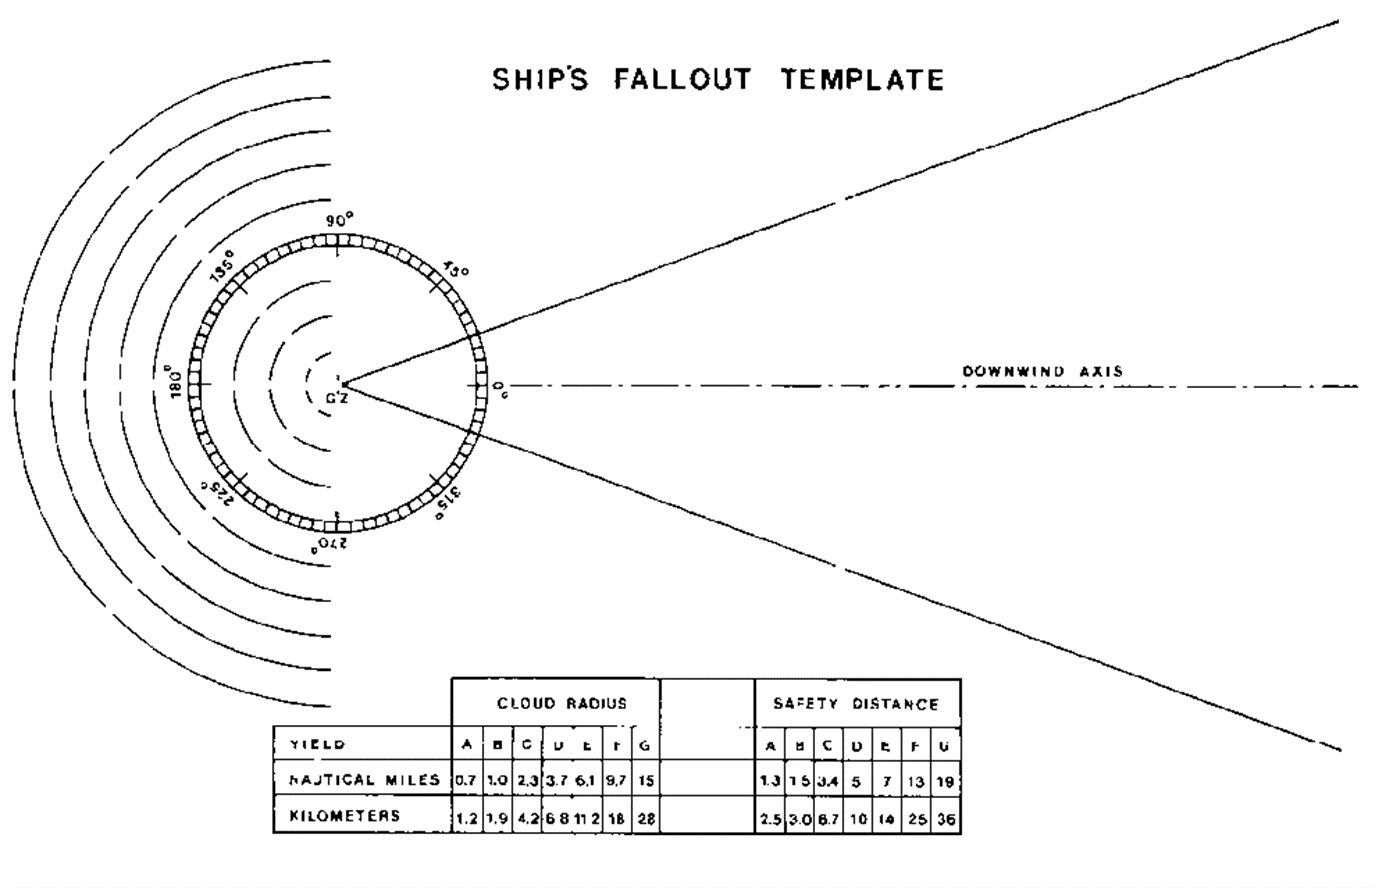 Figure 40-I Ship’s fallout template